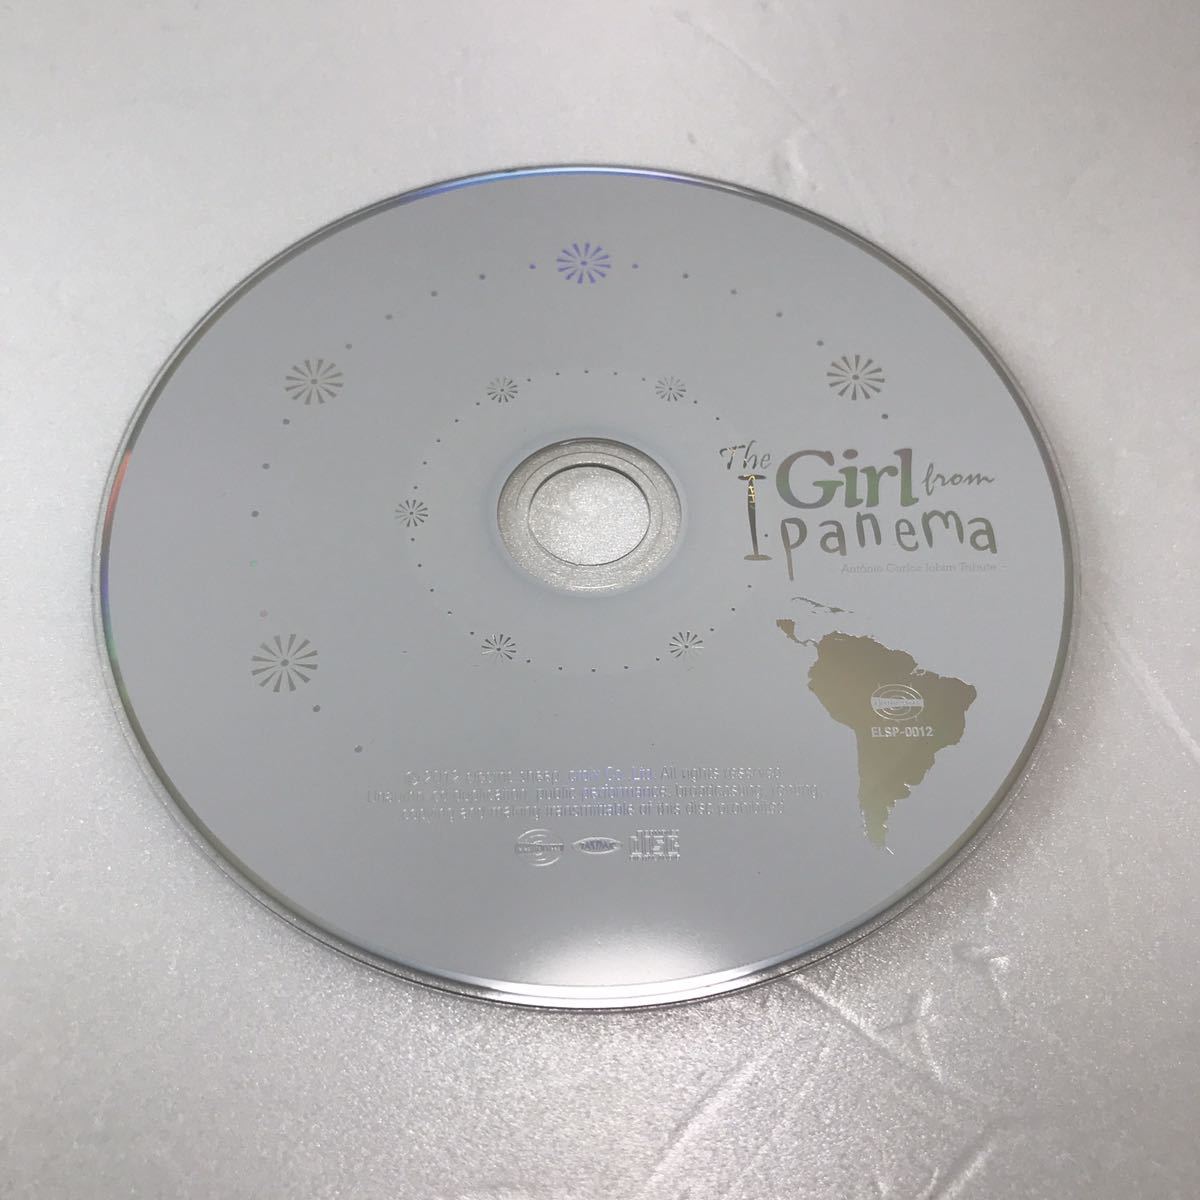 オムニバス／The Girl from Ipanema 〜アントニオ・カルロス・ジョビン・トリビュート〜 【CD】